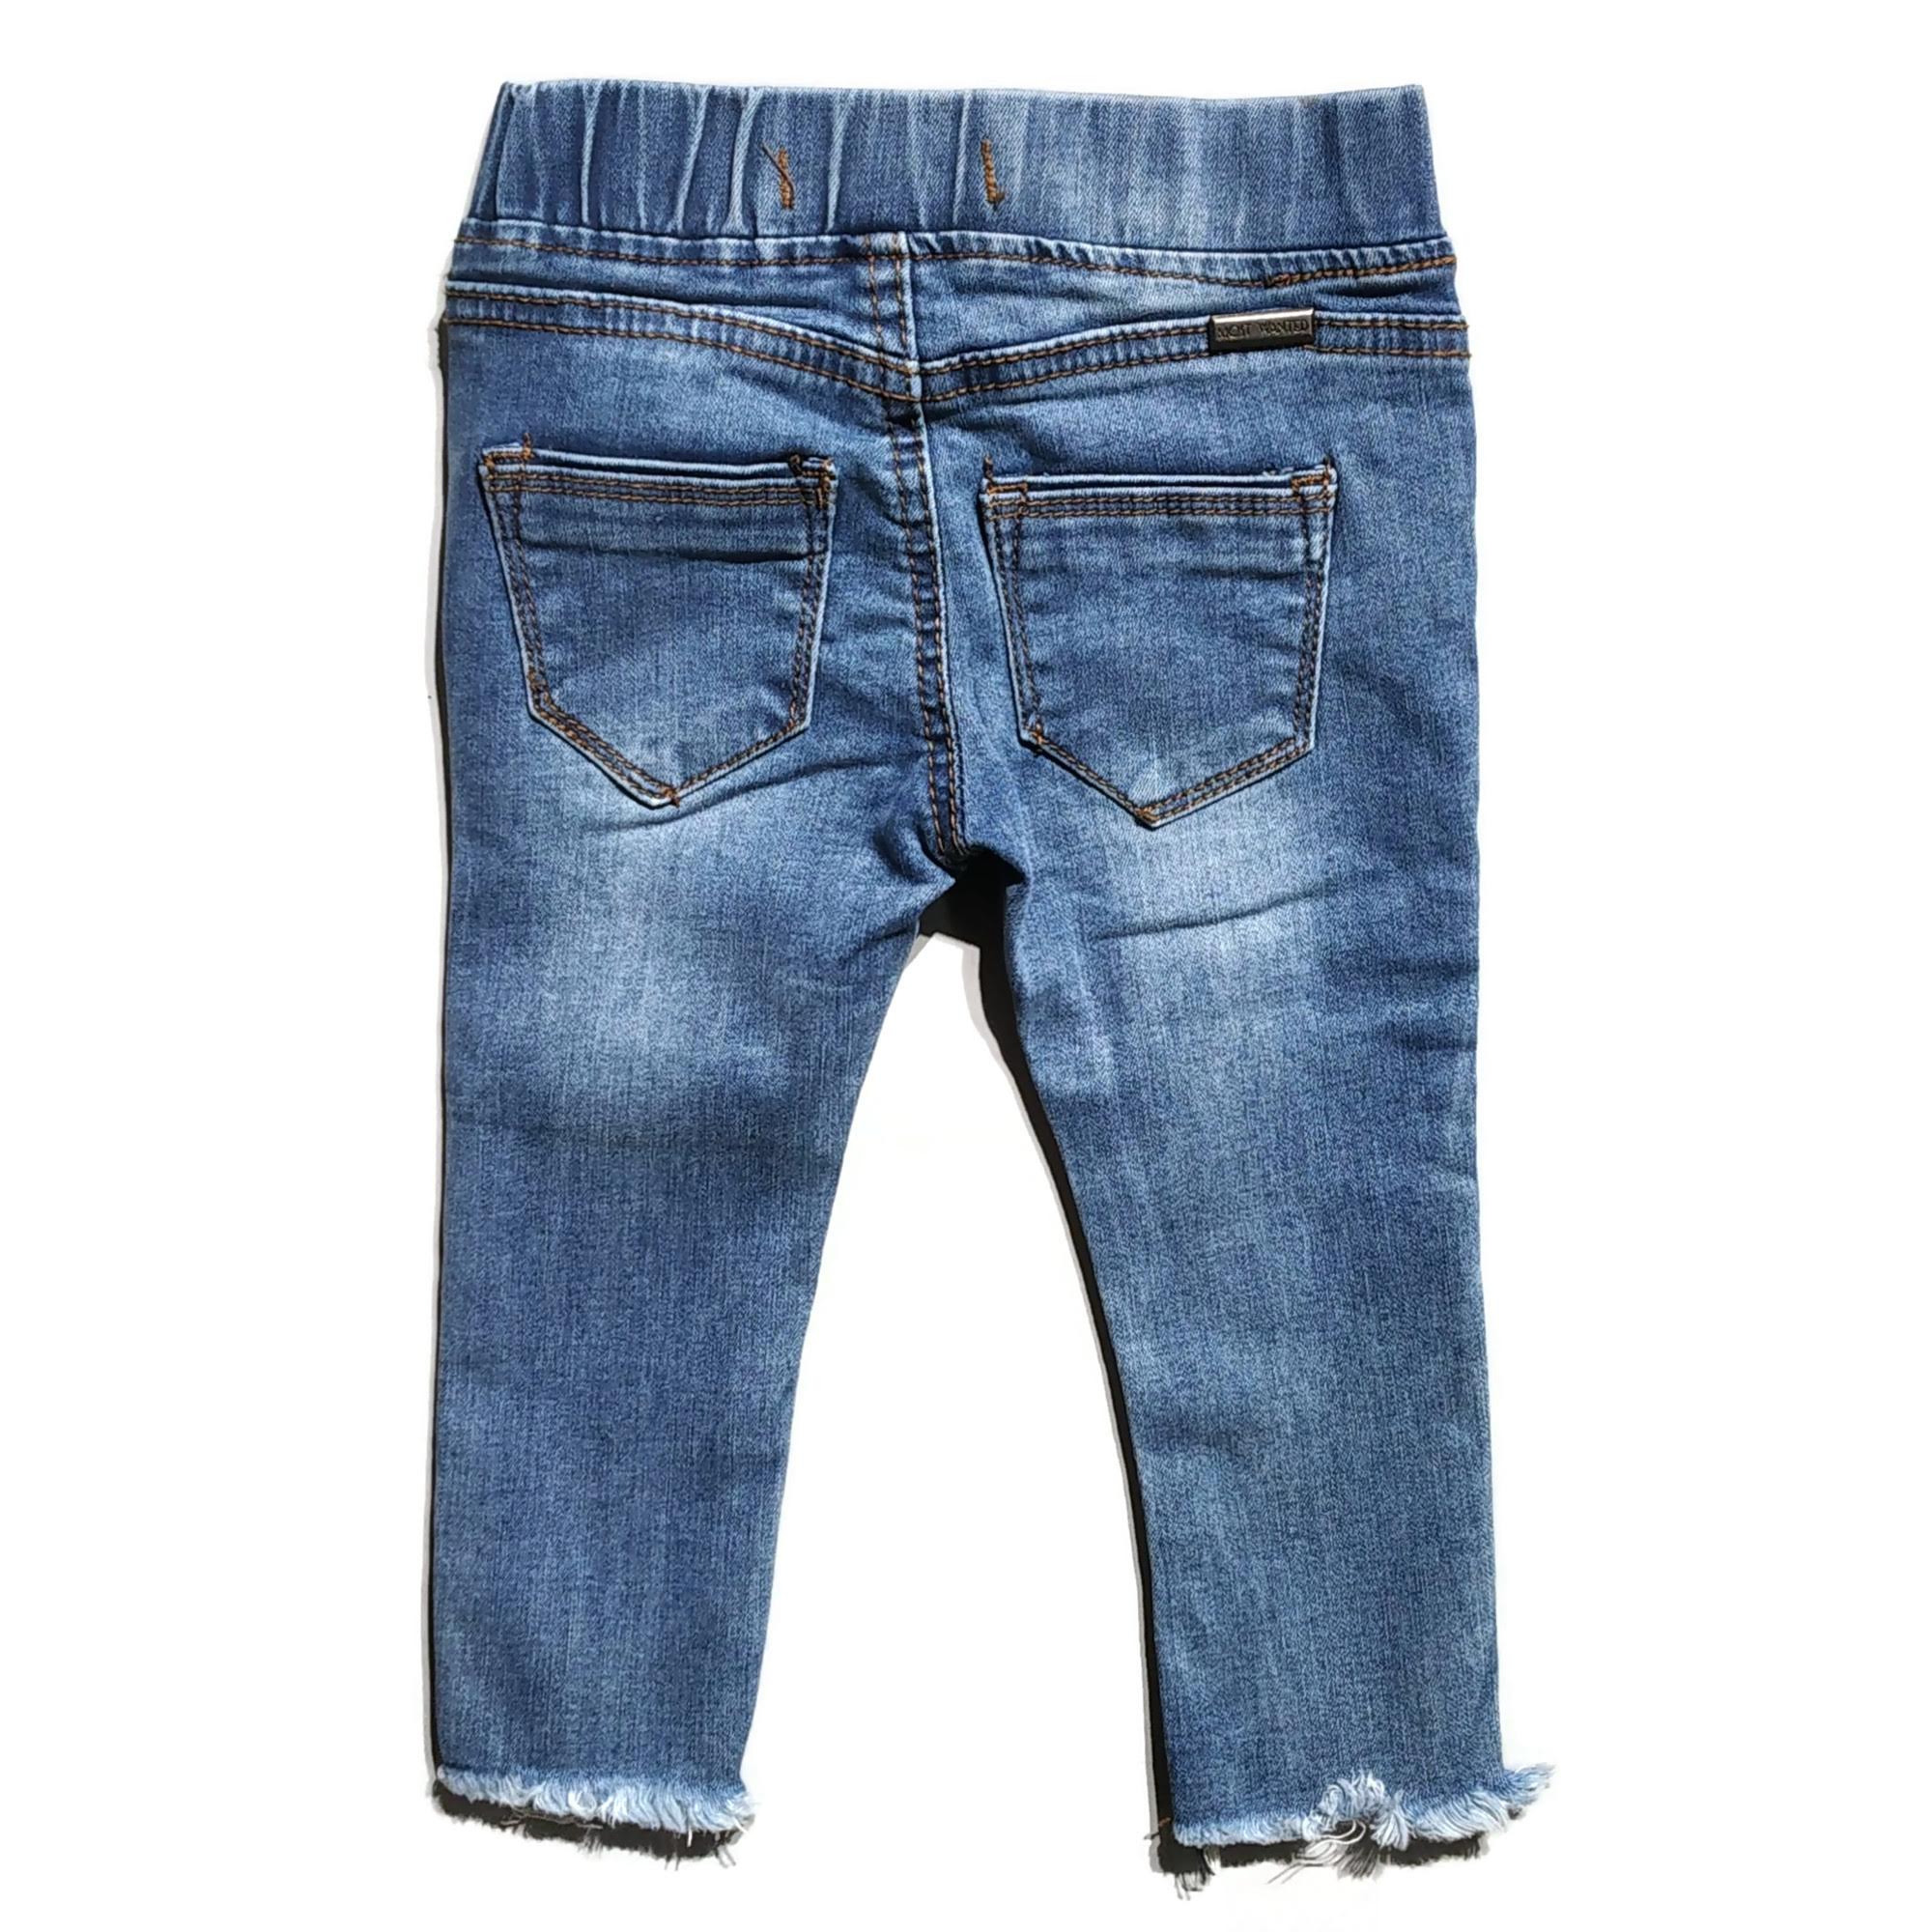 Buy Washed Denim Men's Jeans Shirt Online | Tistabene - Tistabene